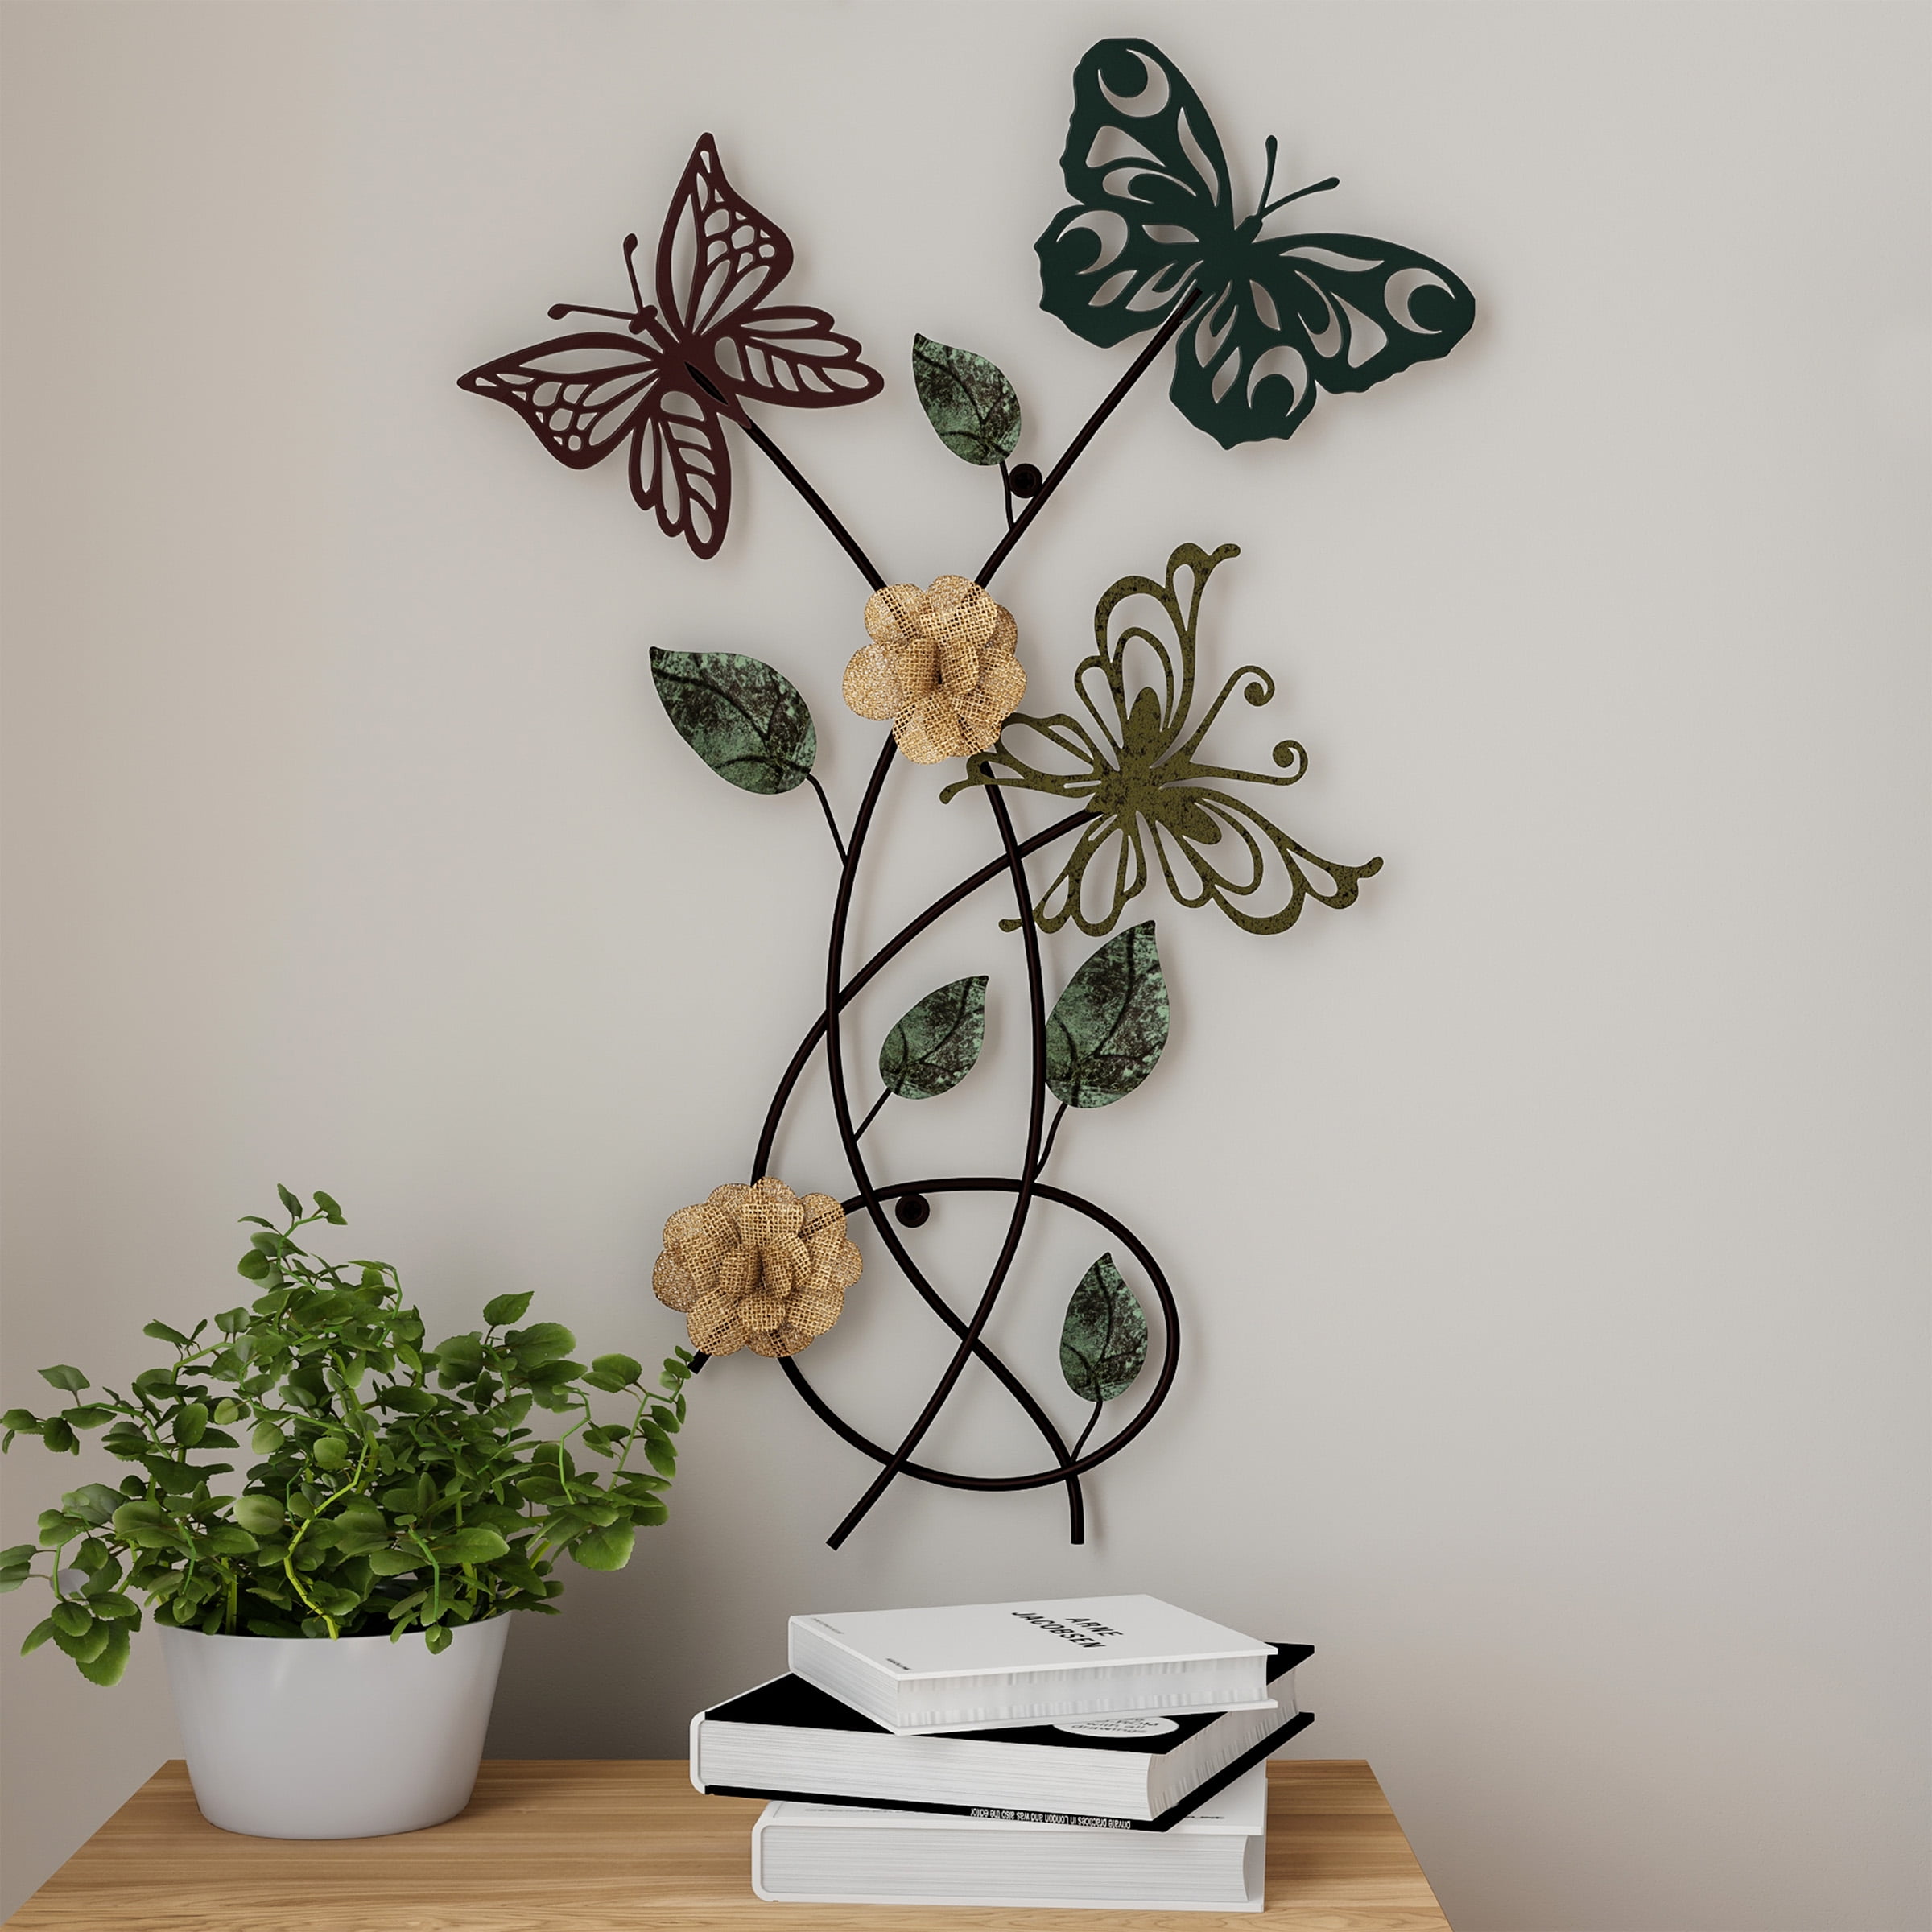 3D Iron Metal Butterfly Wall Art Home Garden Decor Hanging Sculpture Figurine 